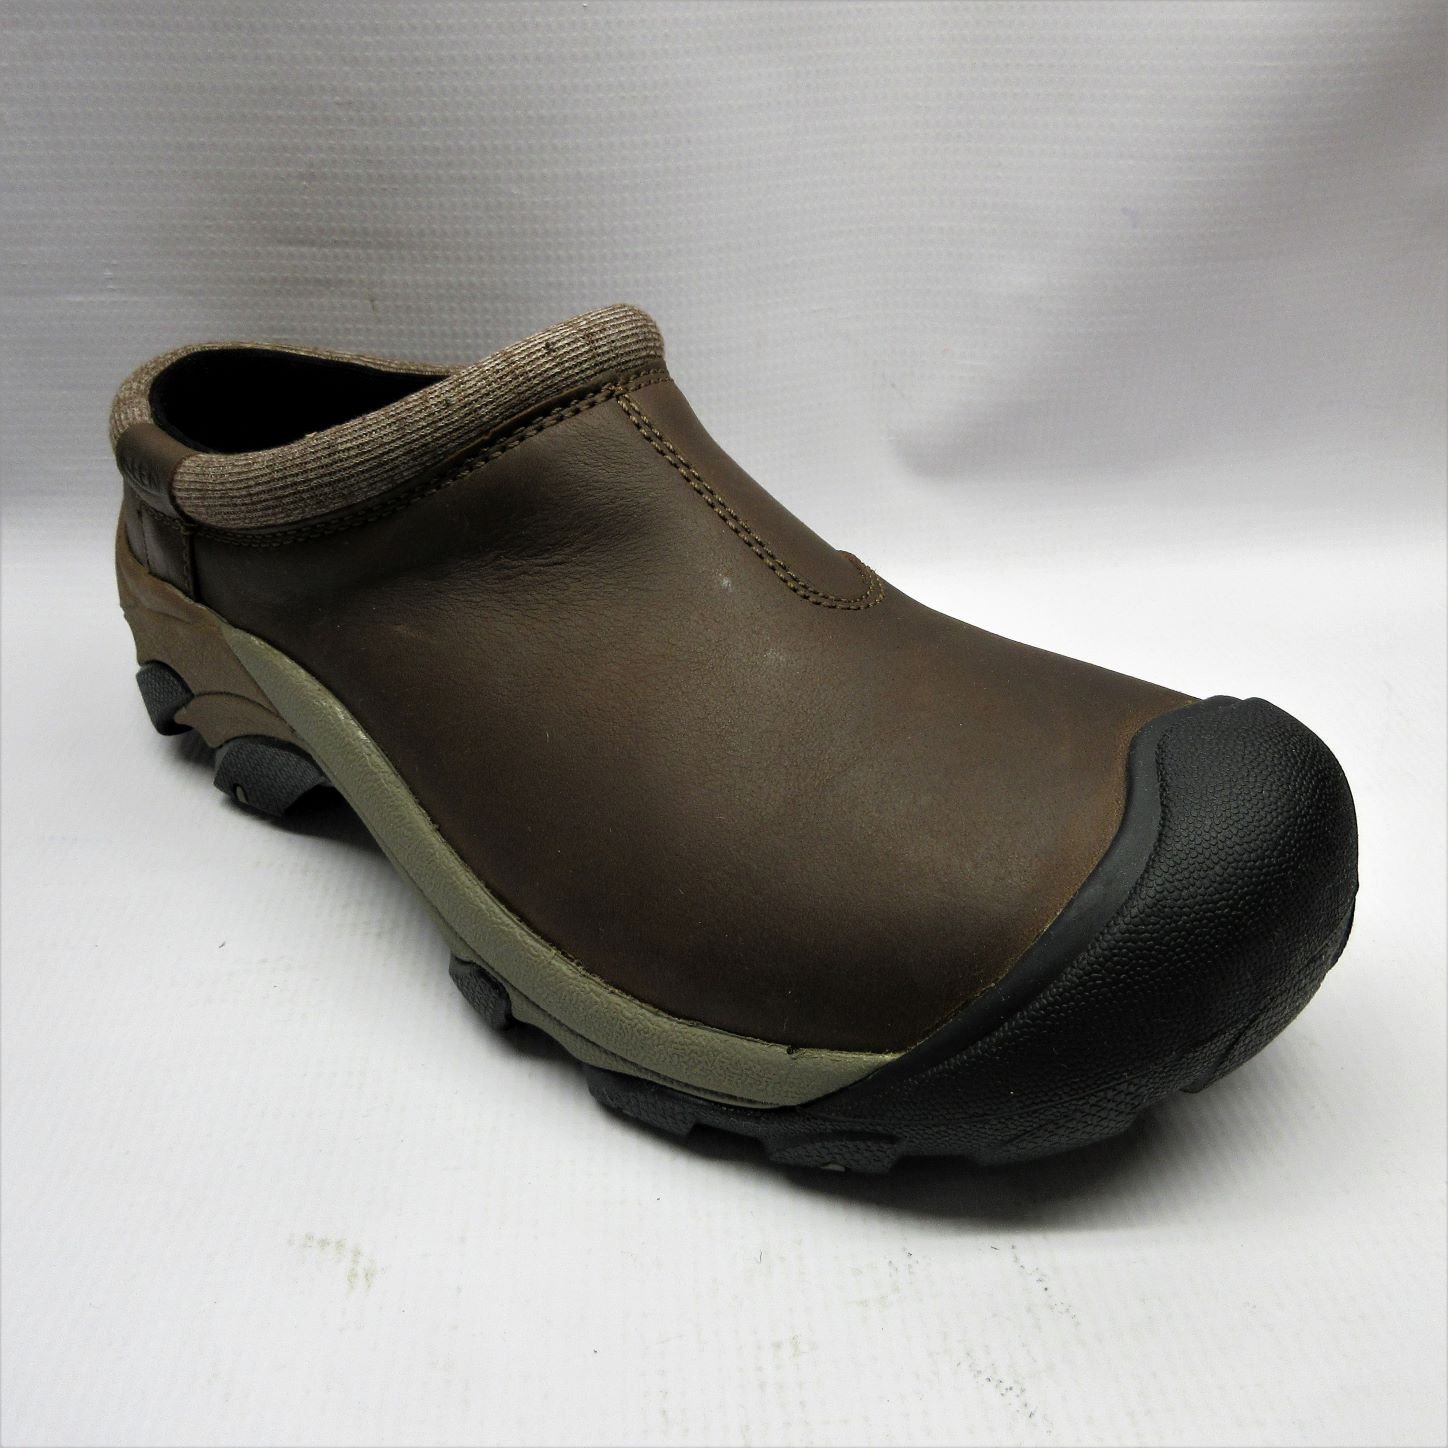 Keen Targhee II Clog Dark Earth - Zuecos de descanso - Marrón - Grandes  Zapatos